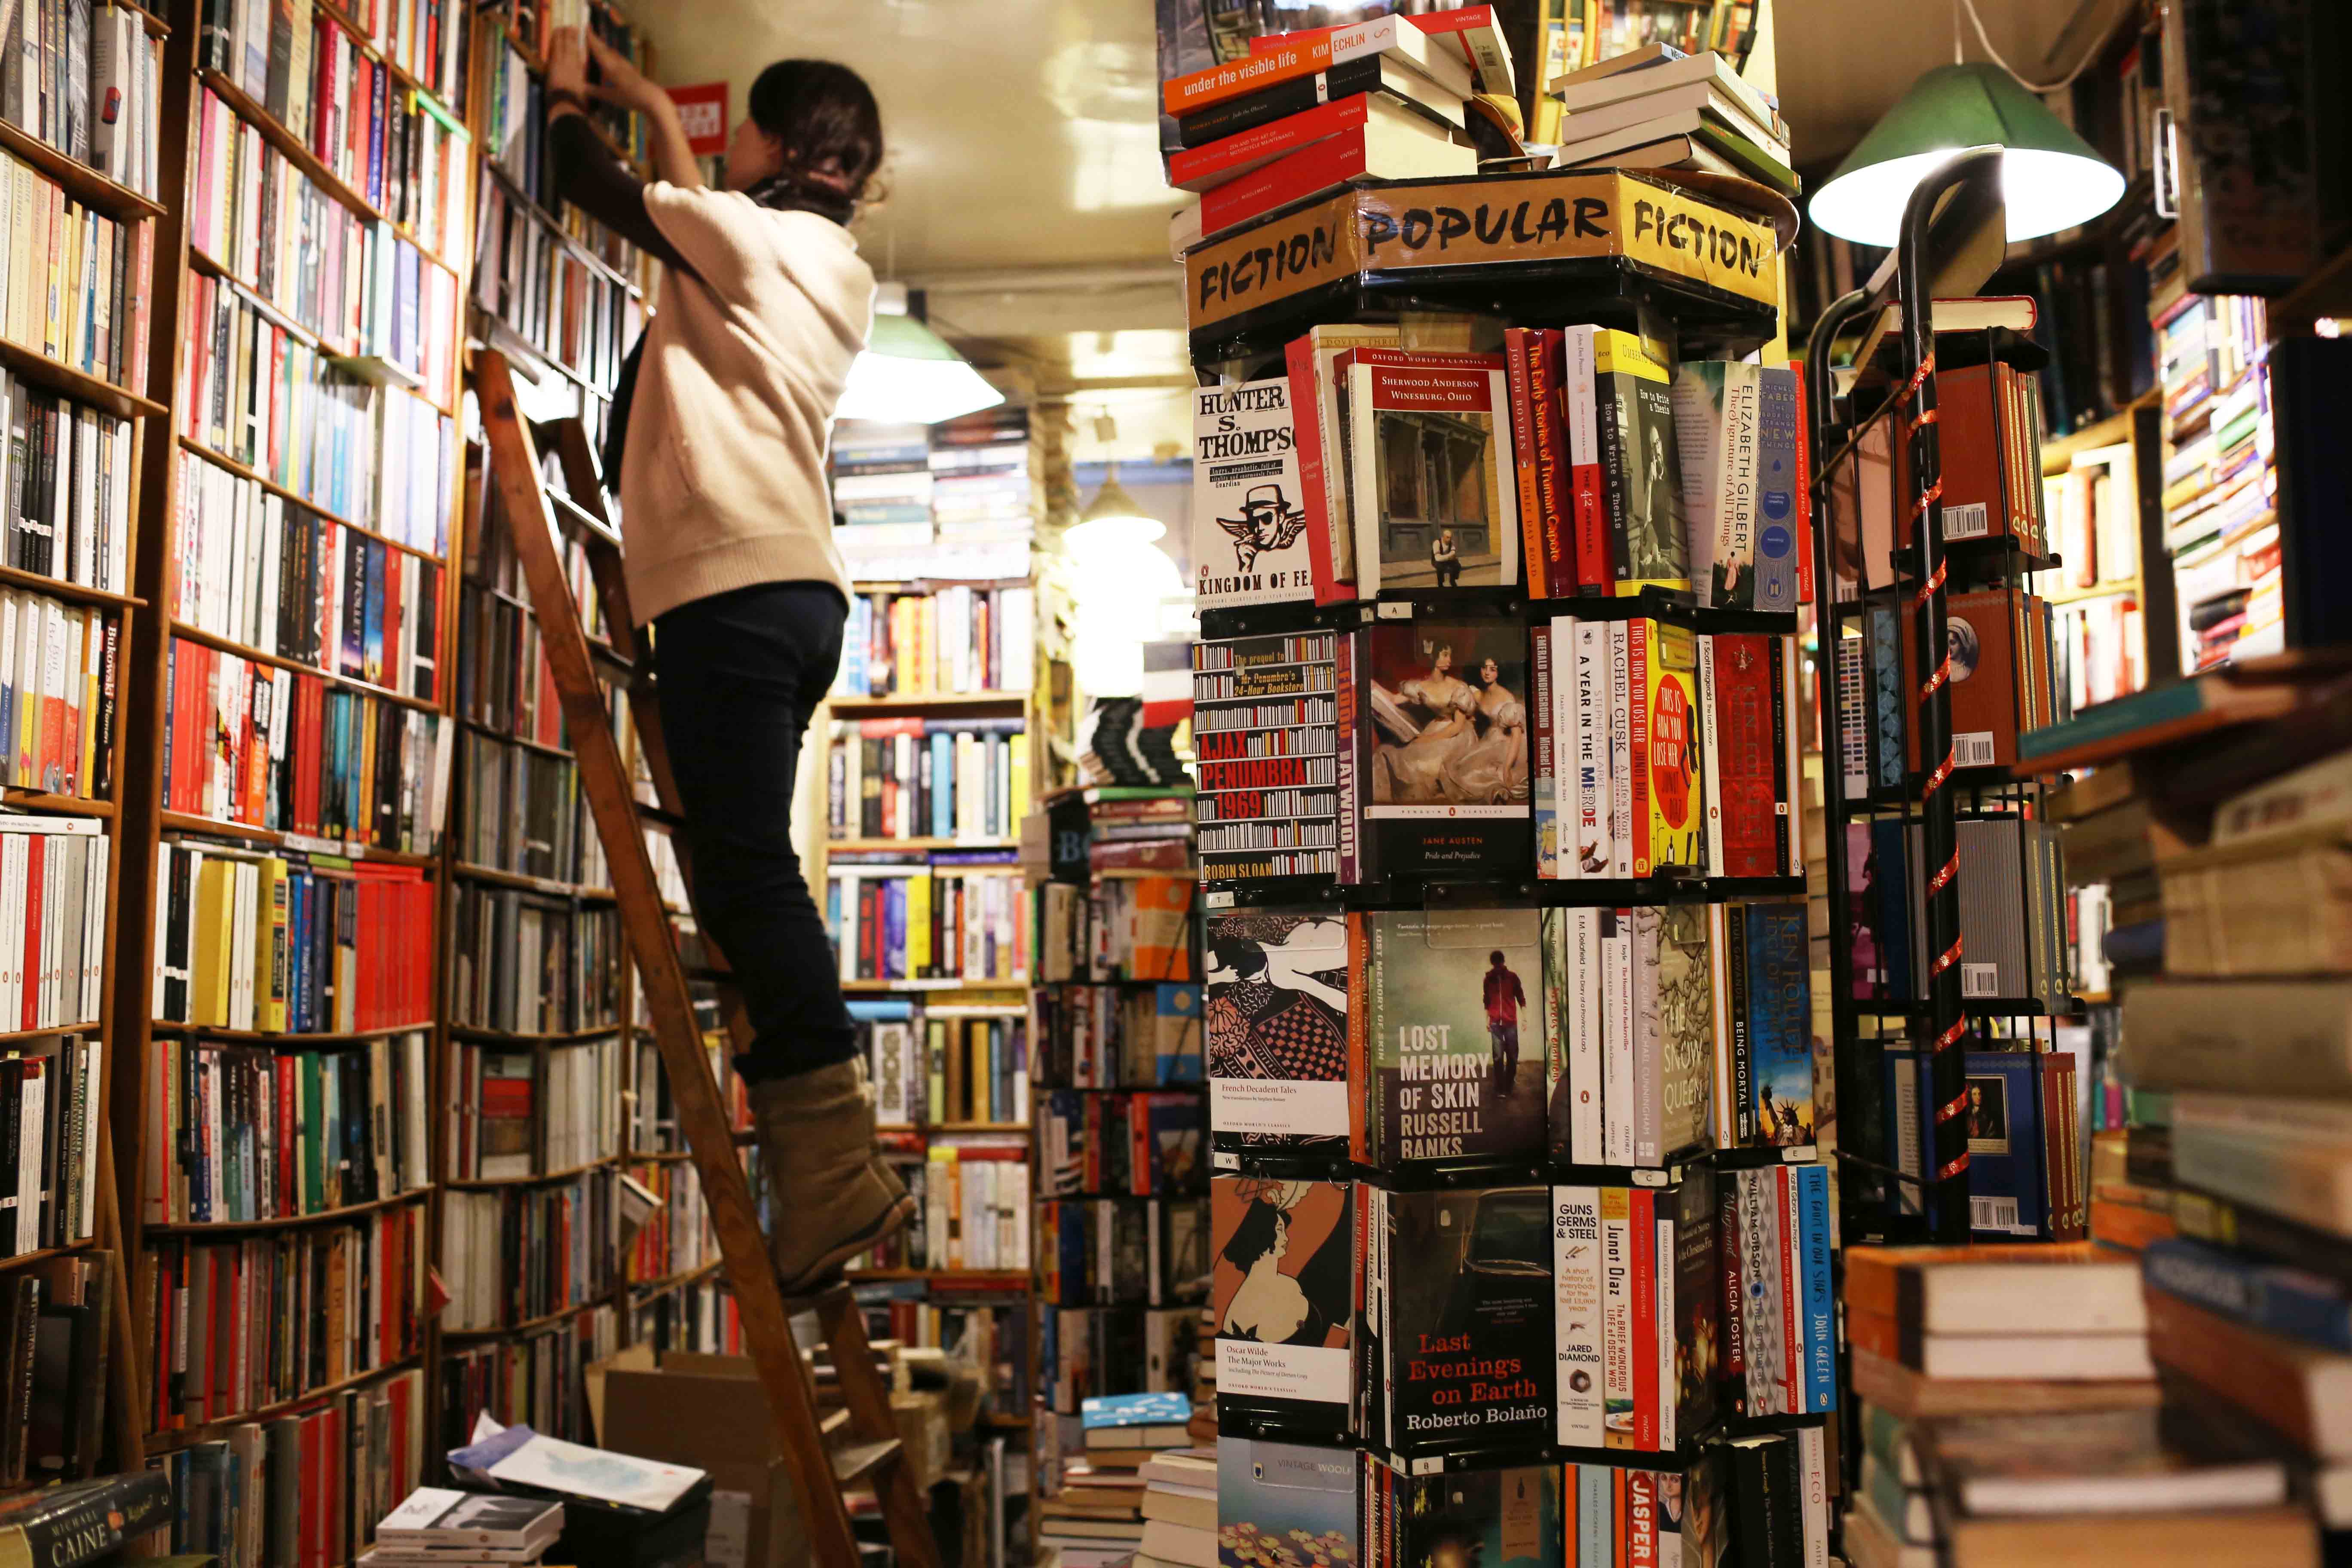 City landmark - The Abbey Bookshop, Rue de la Parcheminerie, Paris